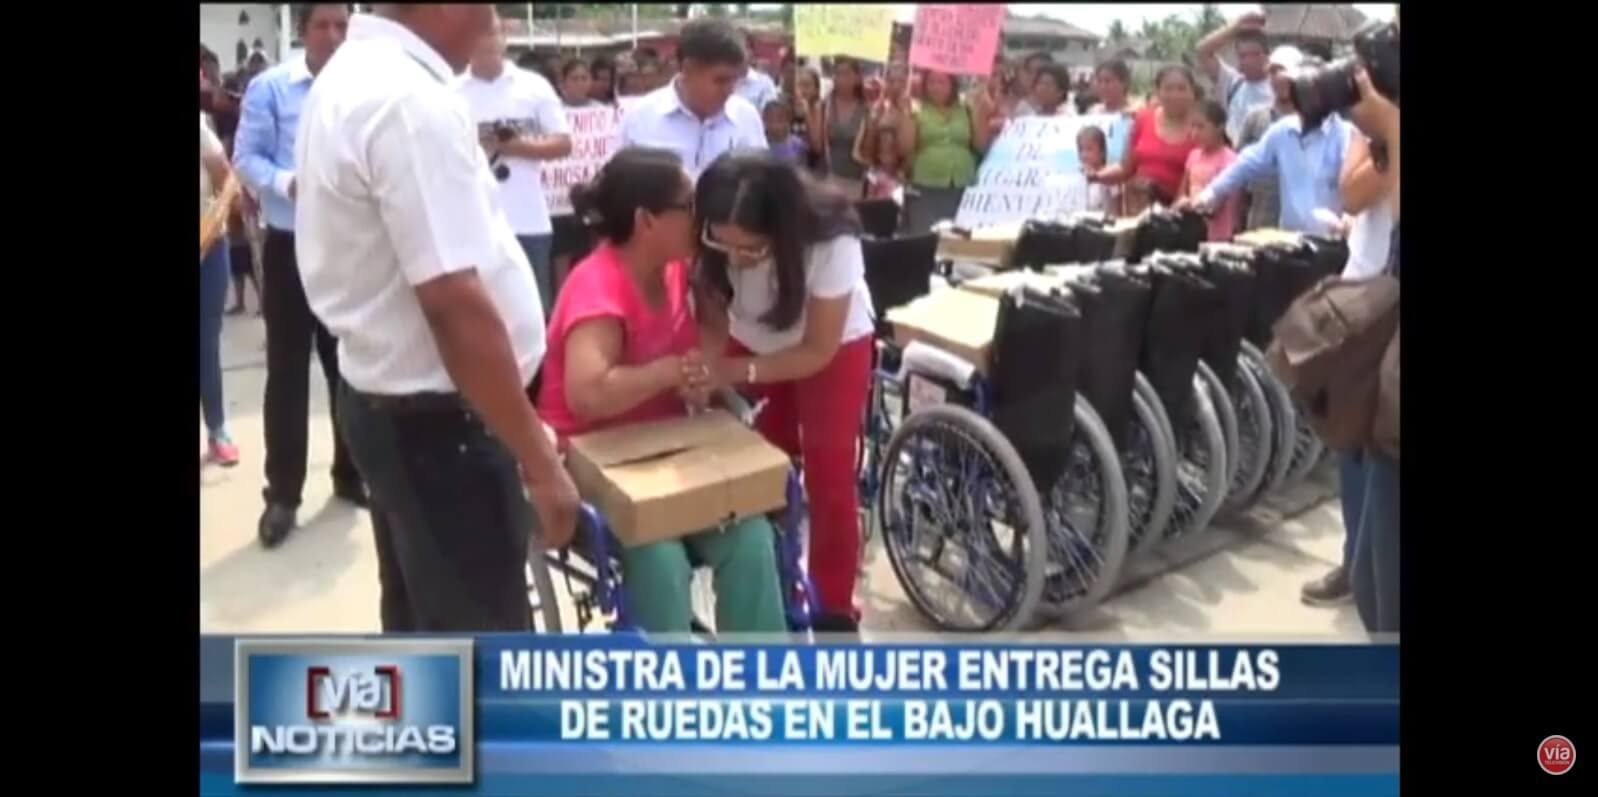 Ministra de la mujer entrega sillas de ruedas en el Bajo Huallaga